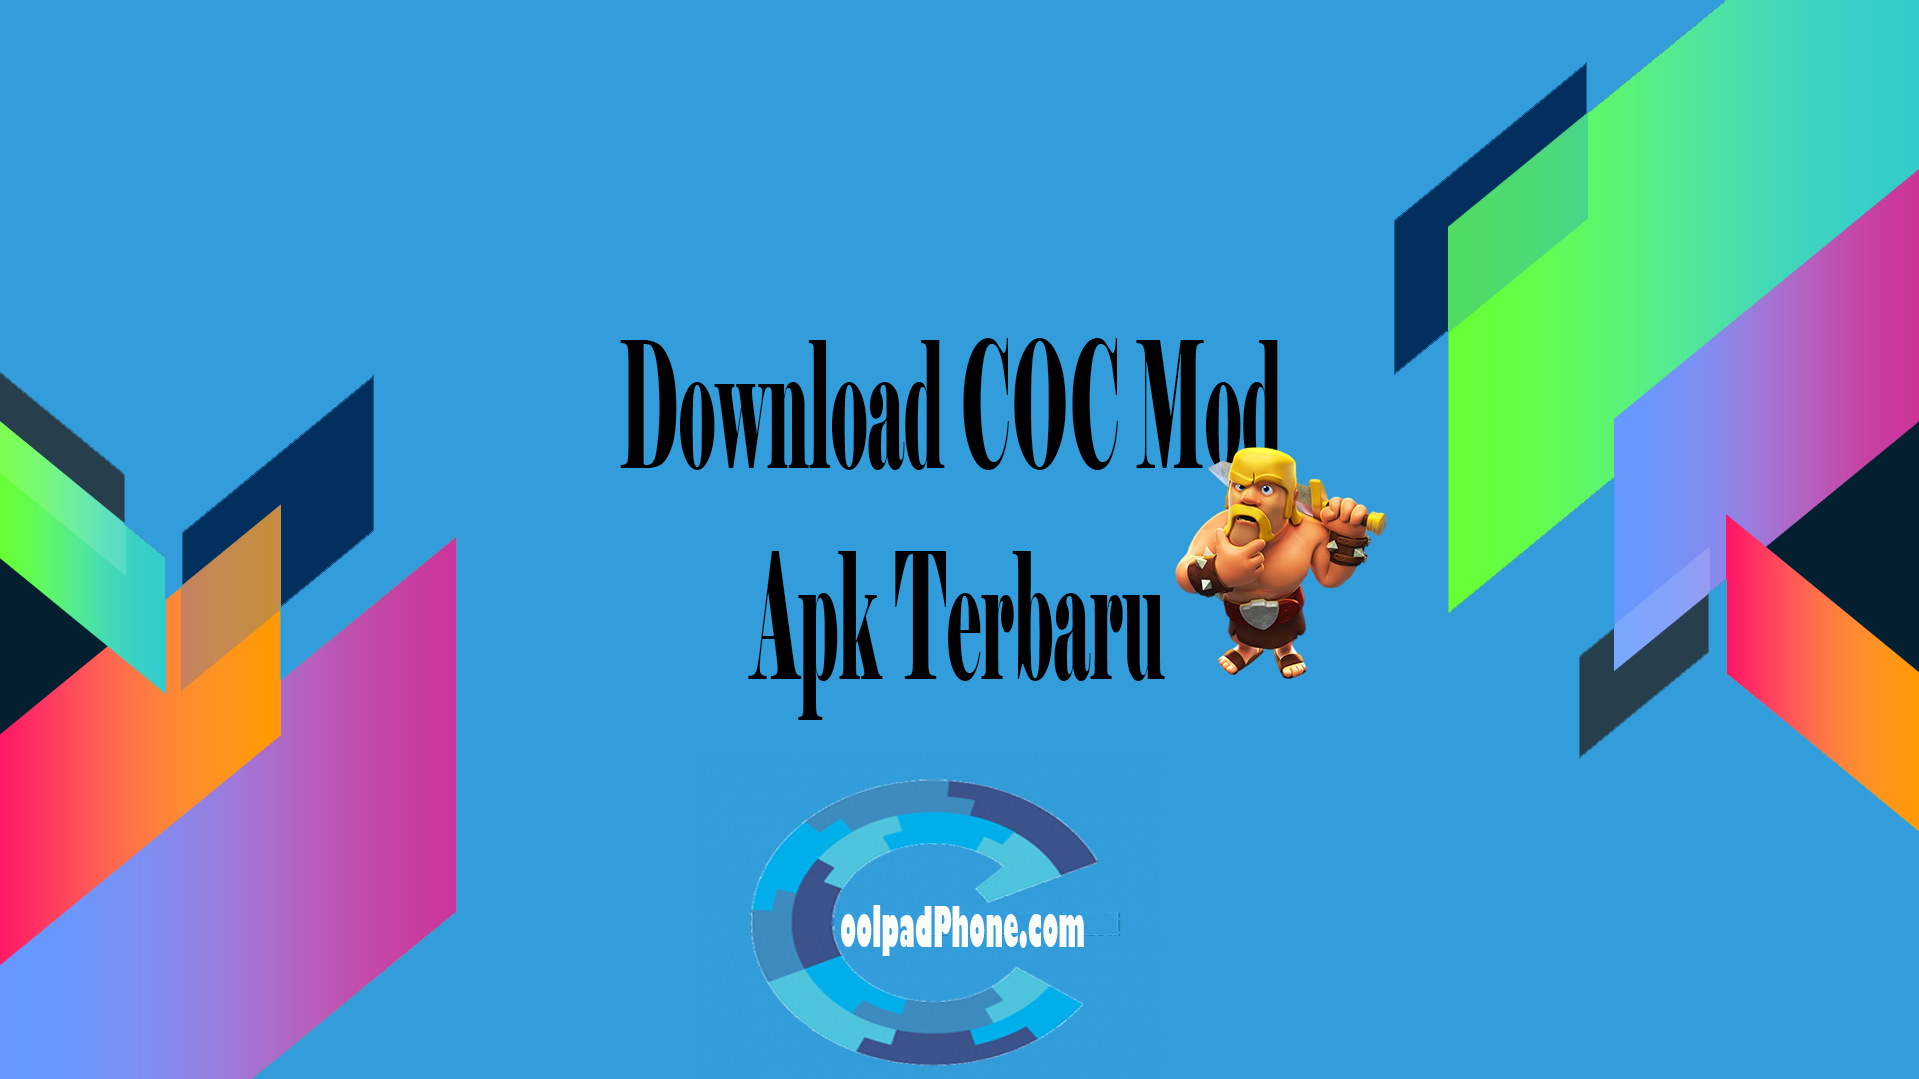 Download COC Mod Apk Terbaru  CoolPadPhone.com